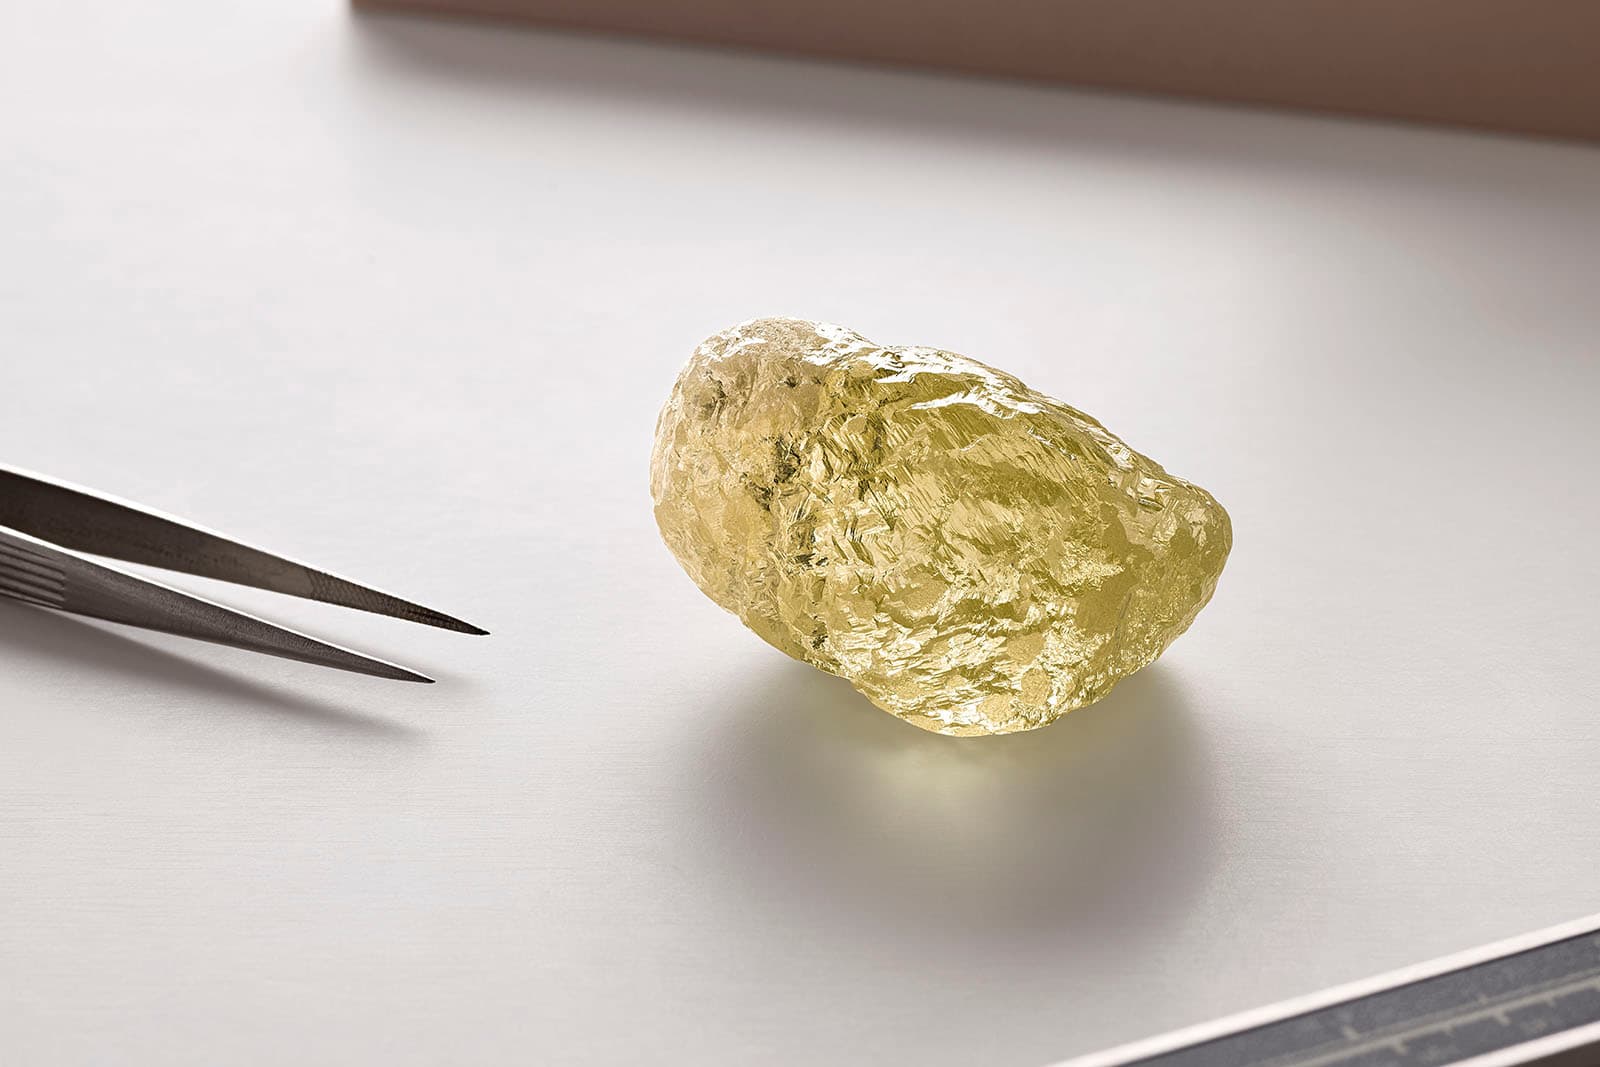 552-каратный желтый бриллиант Diavik - самый большой бриллиант, когда-либо обнаруженный в Северной Америке